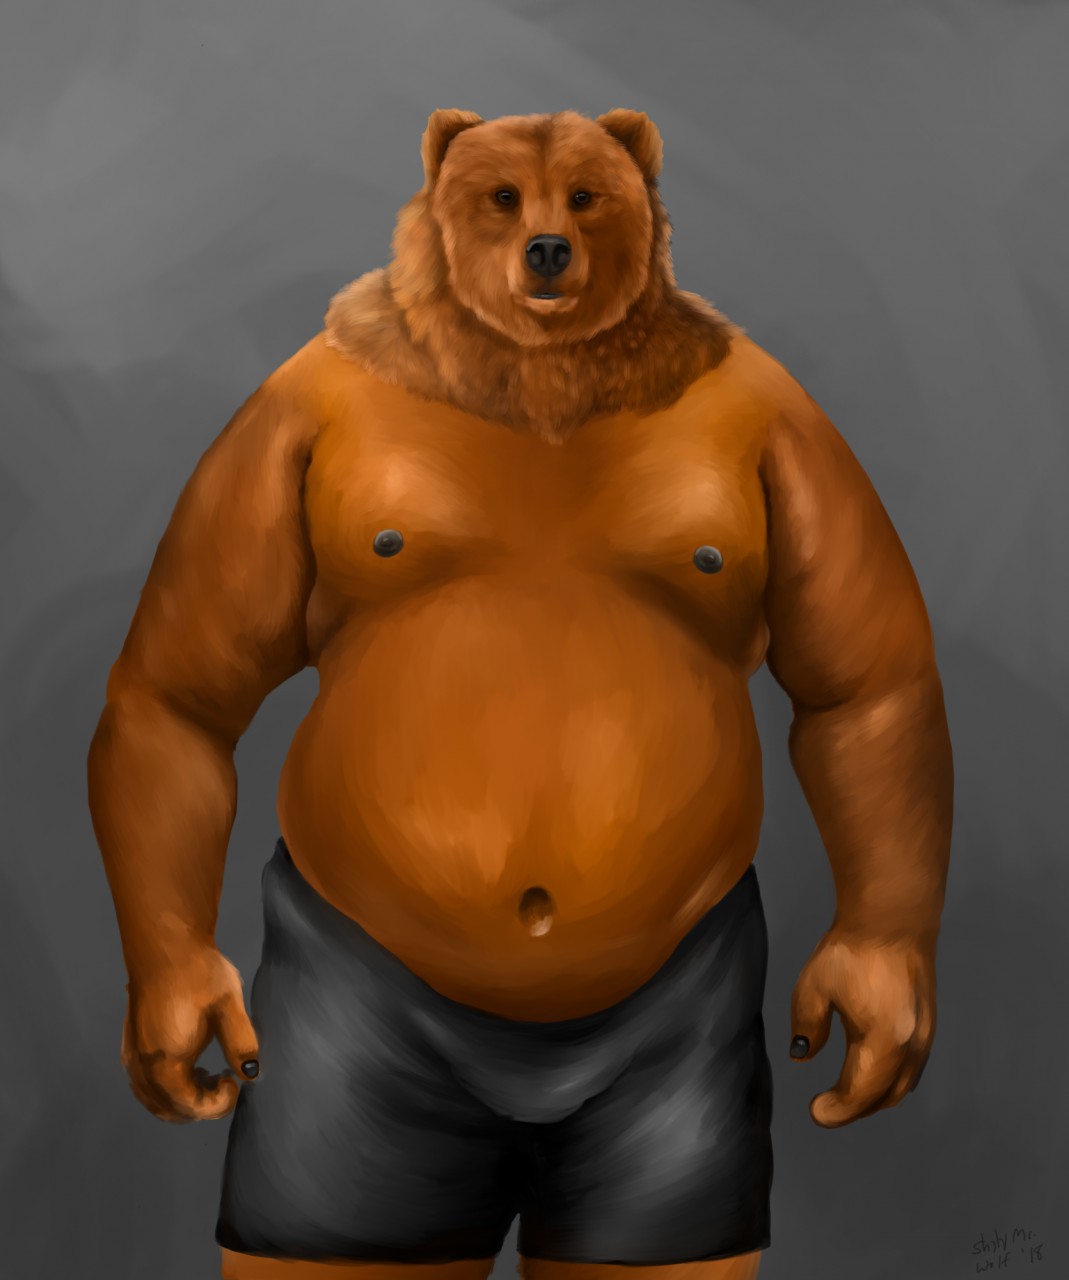 Bear men fat This 'Big,